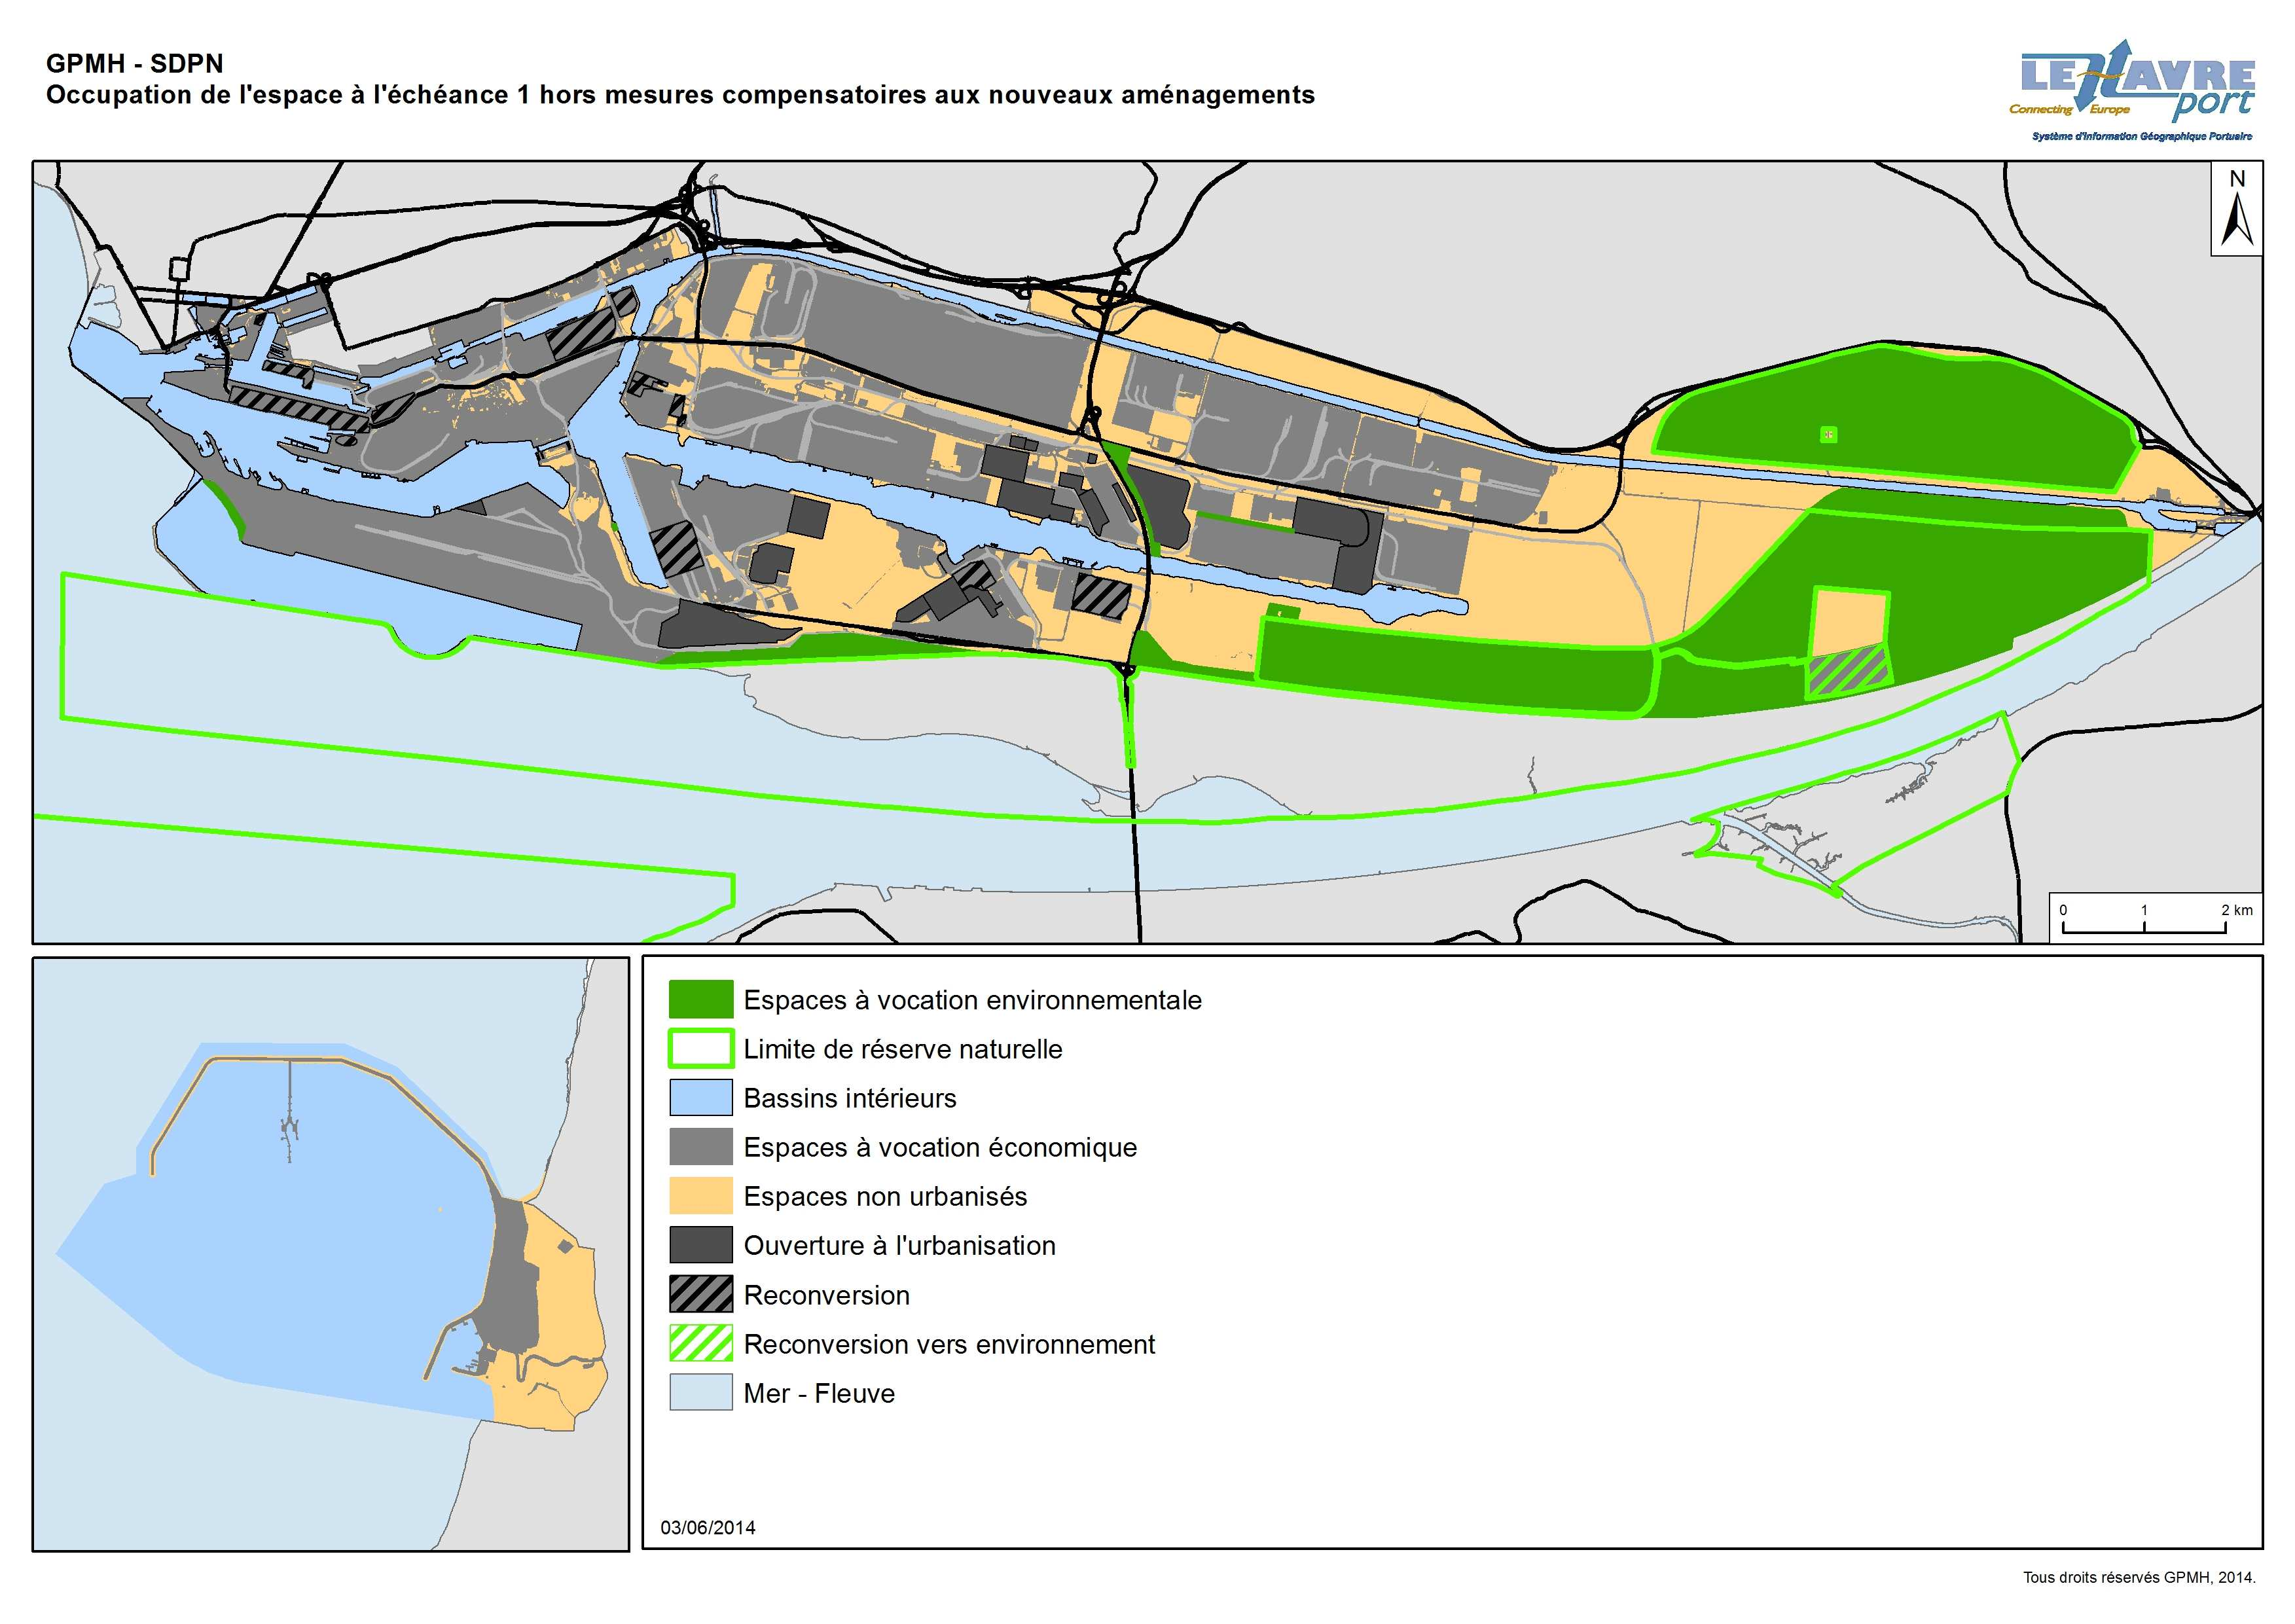 Ports Maritime, il ne peut pas être totalement exclu que certains aménagements envisagés à échéance 2 (au-delà du présent projet stratégique voir rapport environnemental) soient réalisés au cours de